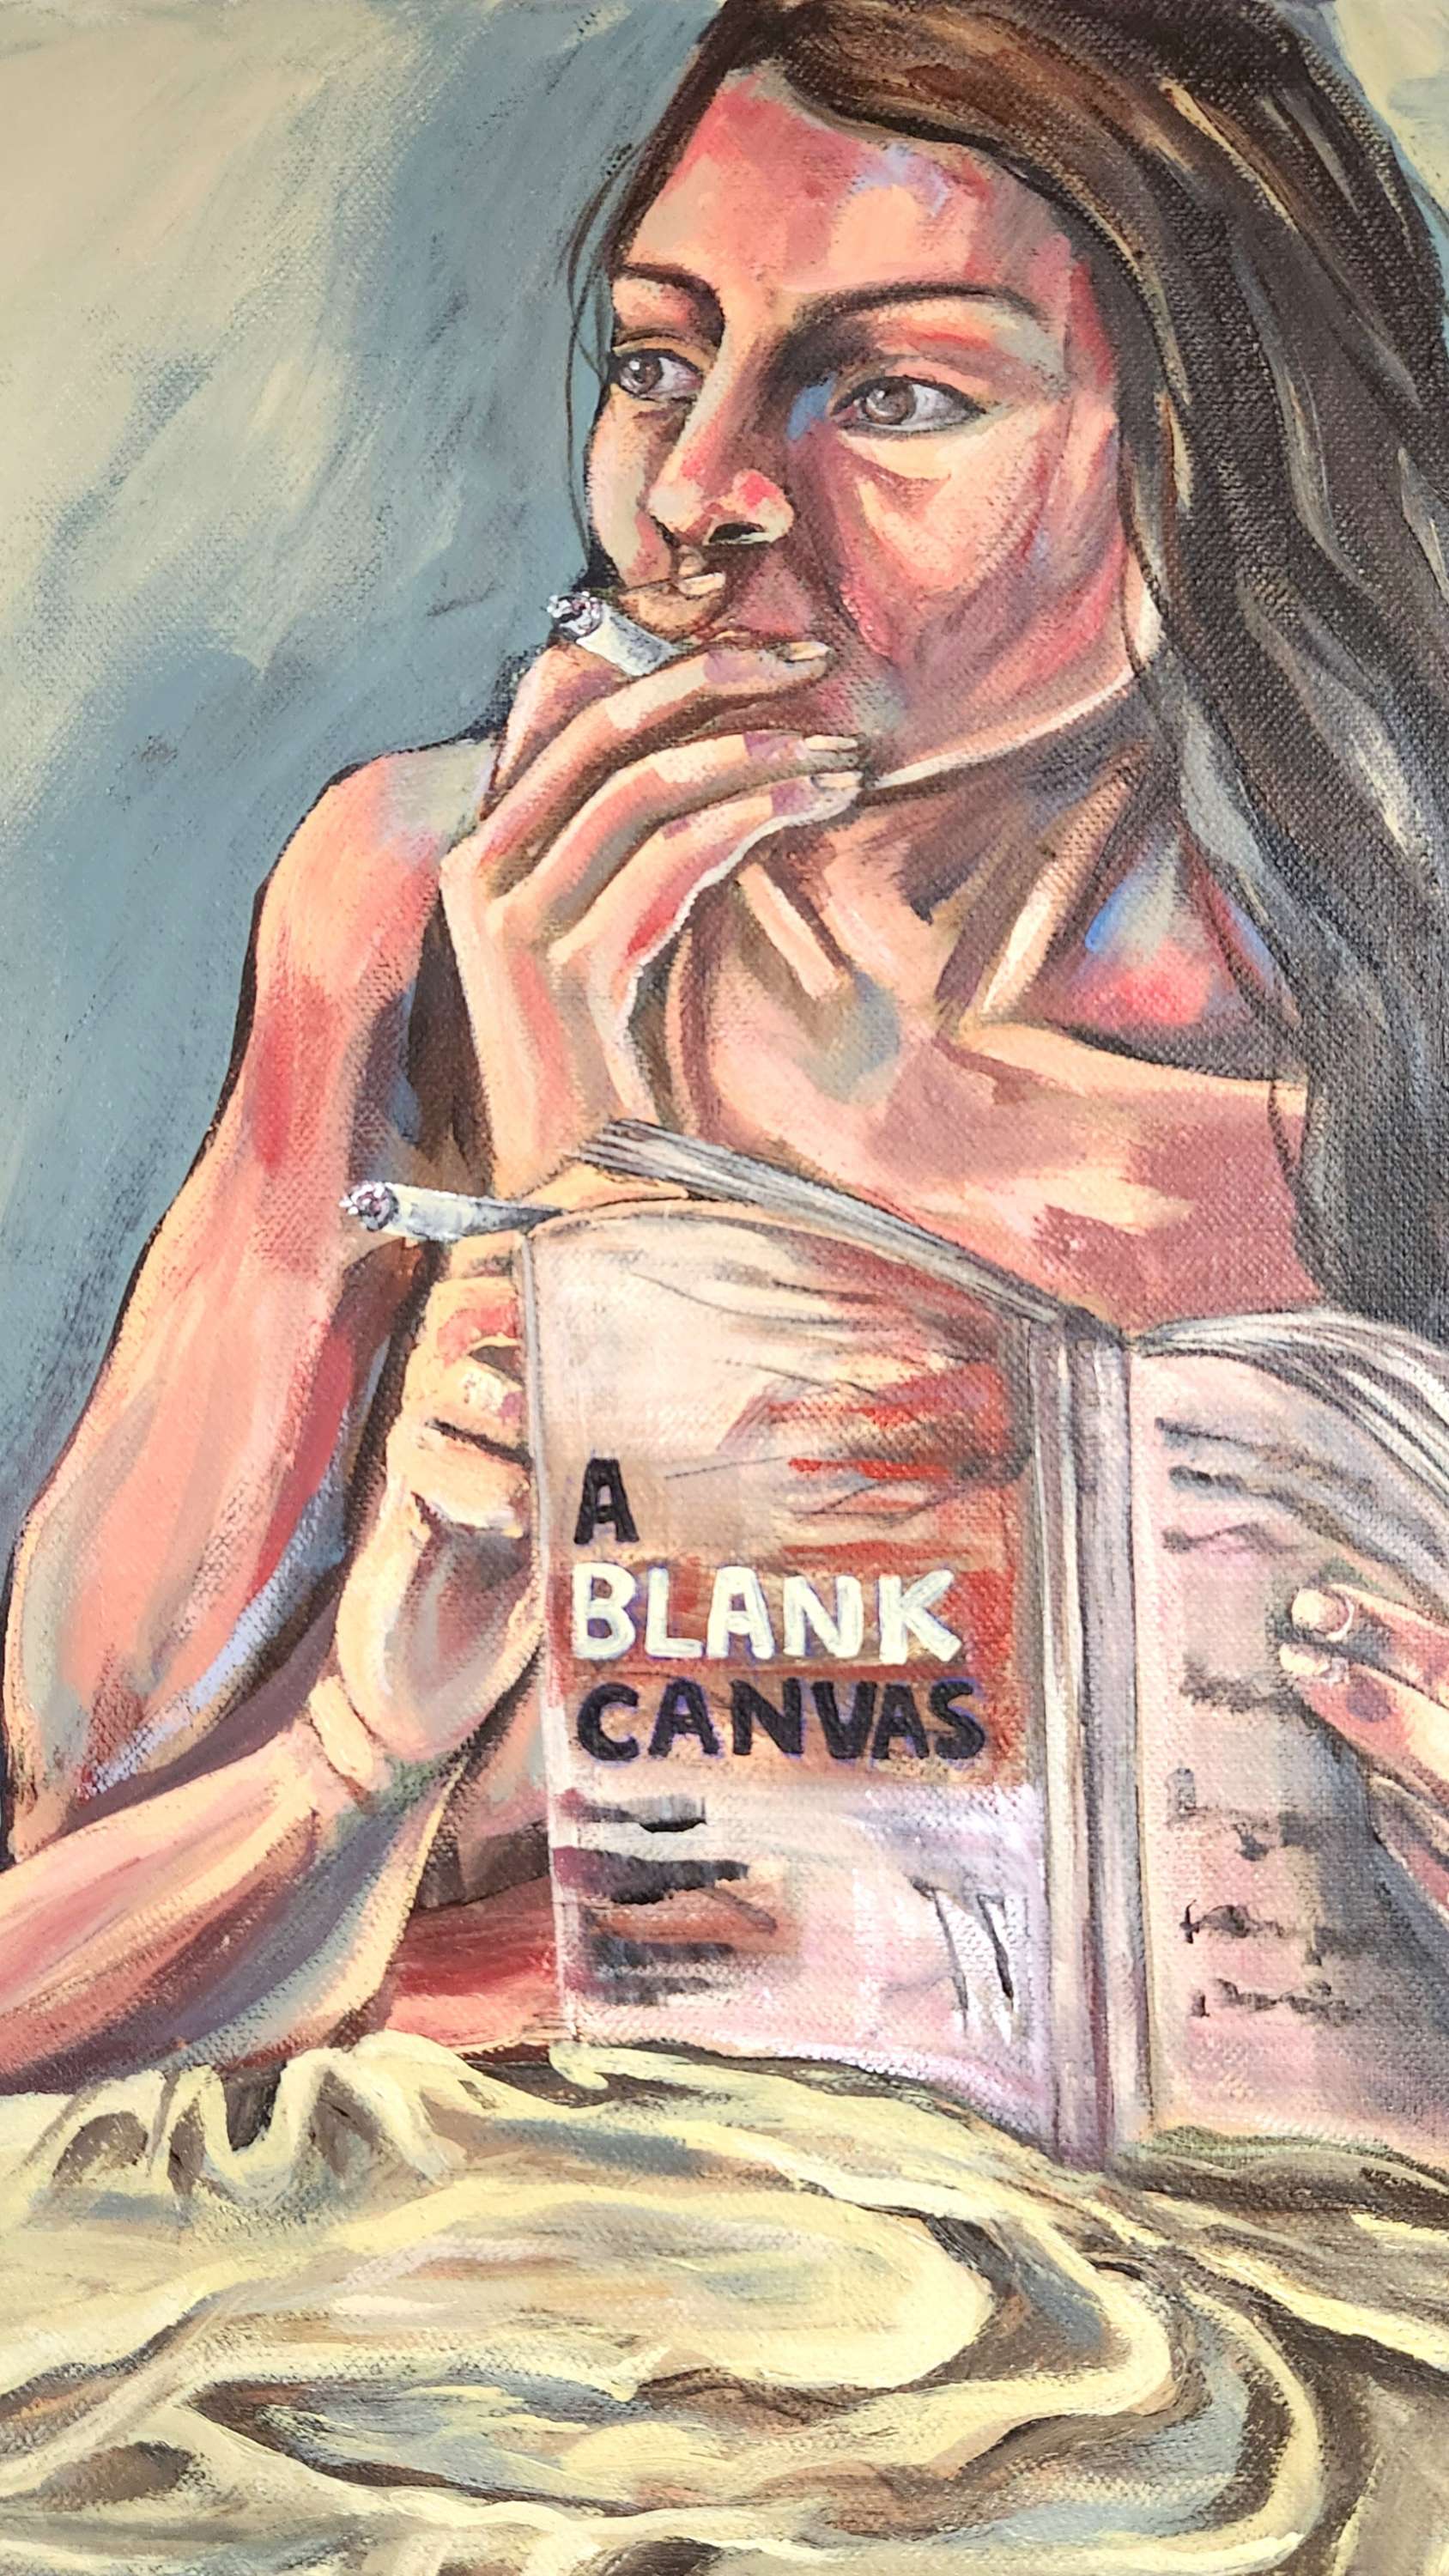 A Blank Canvas